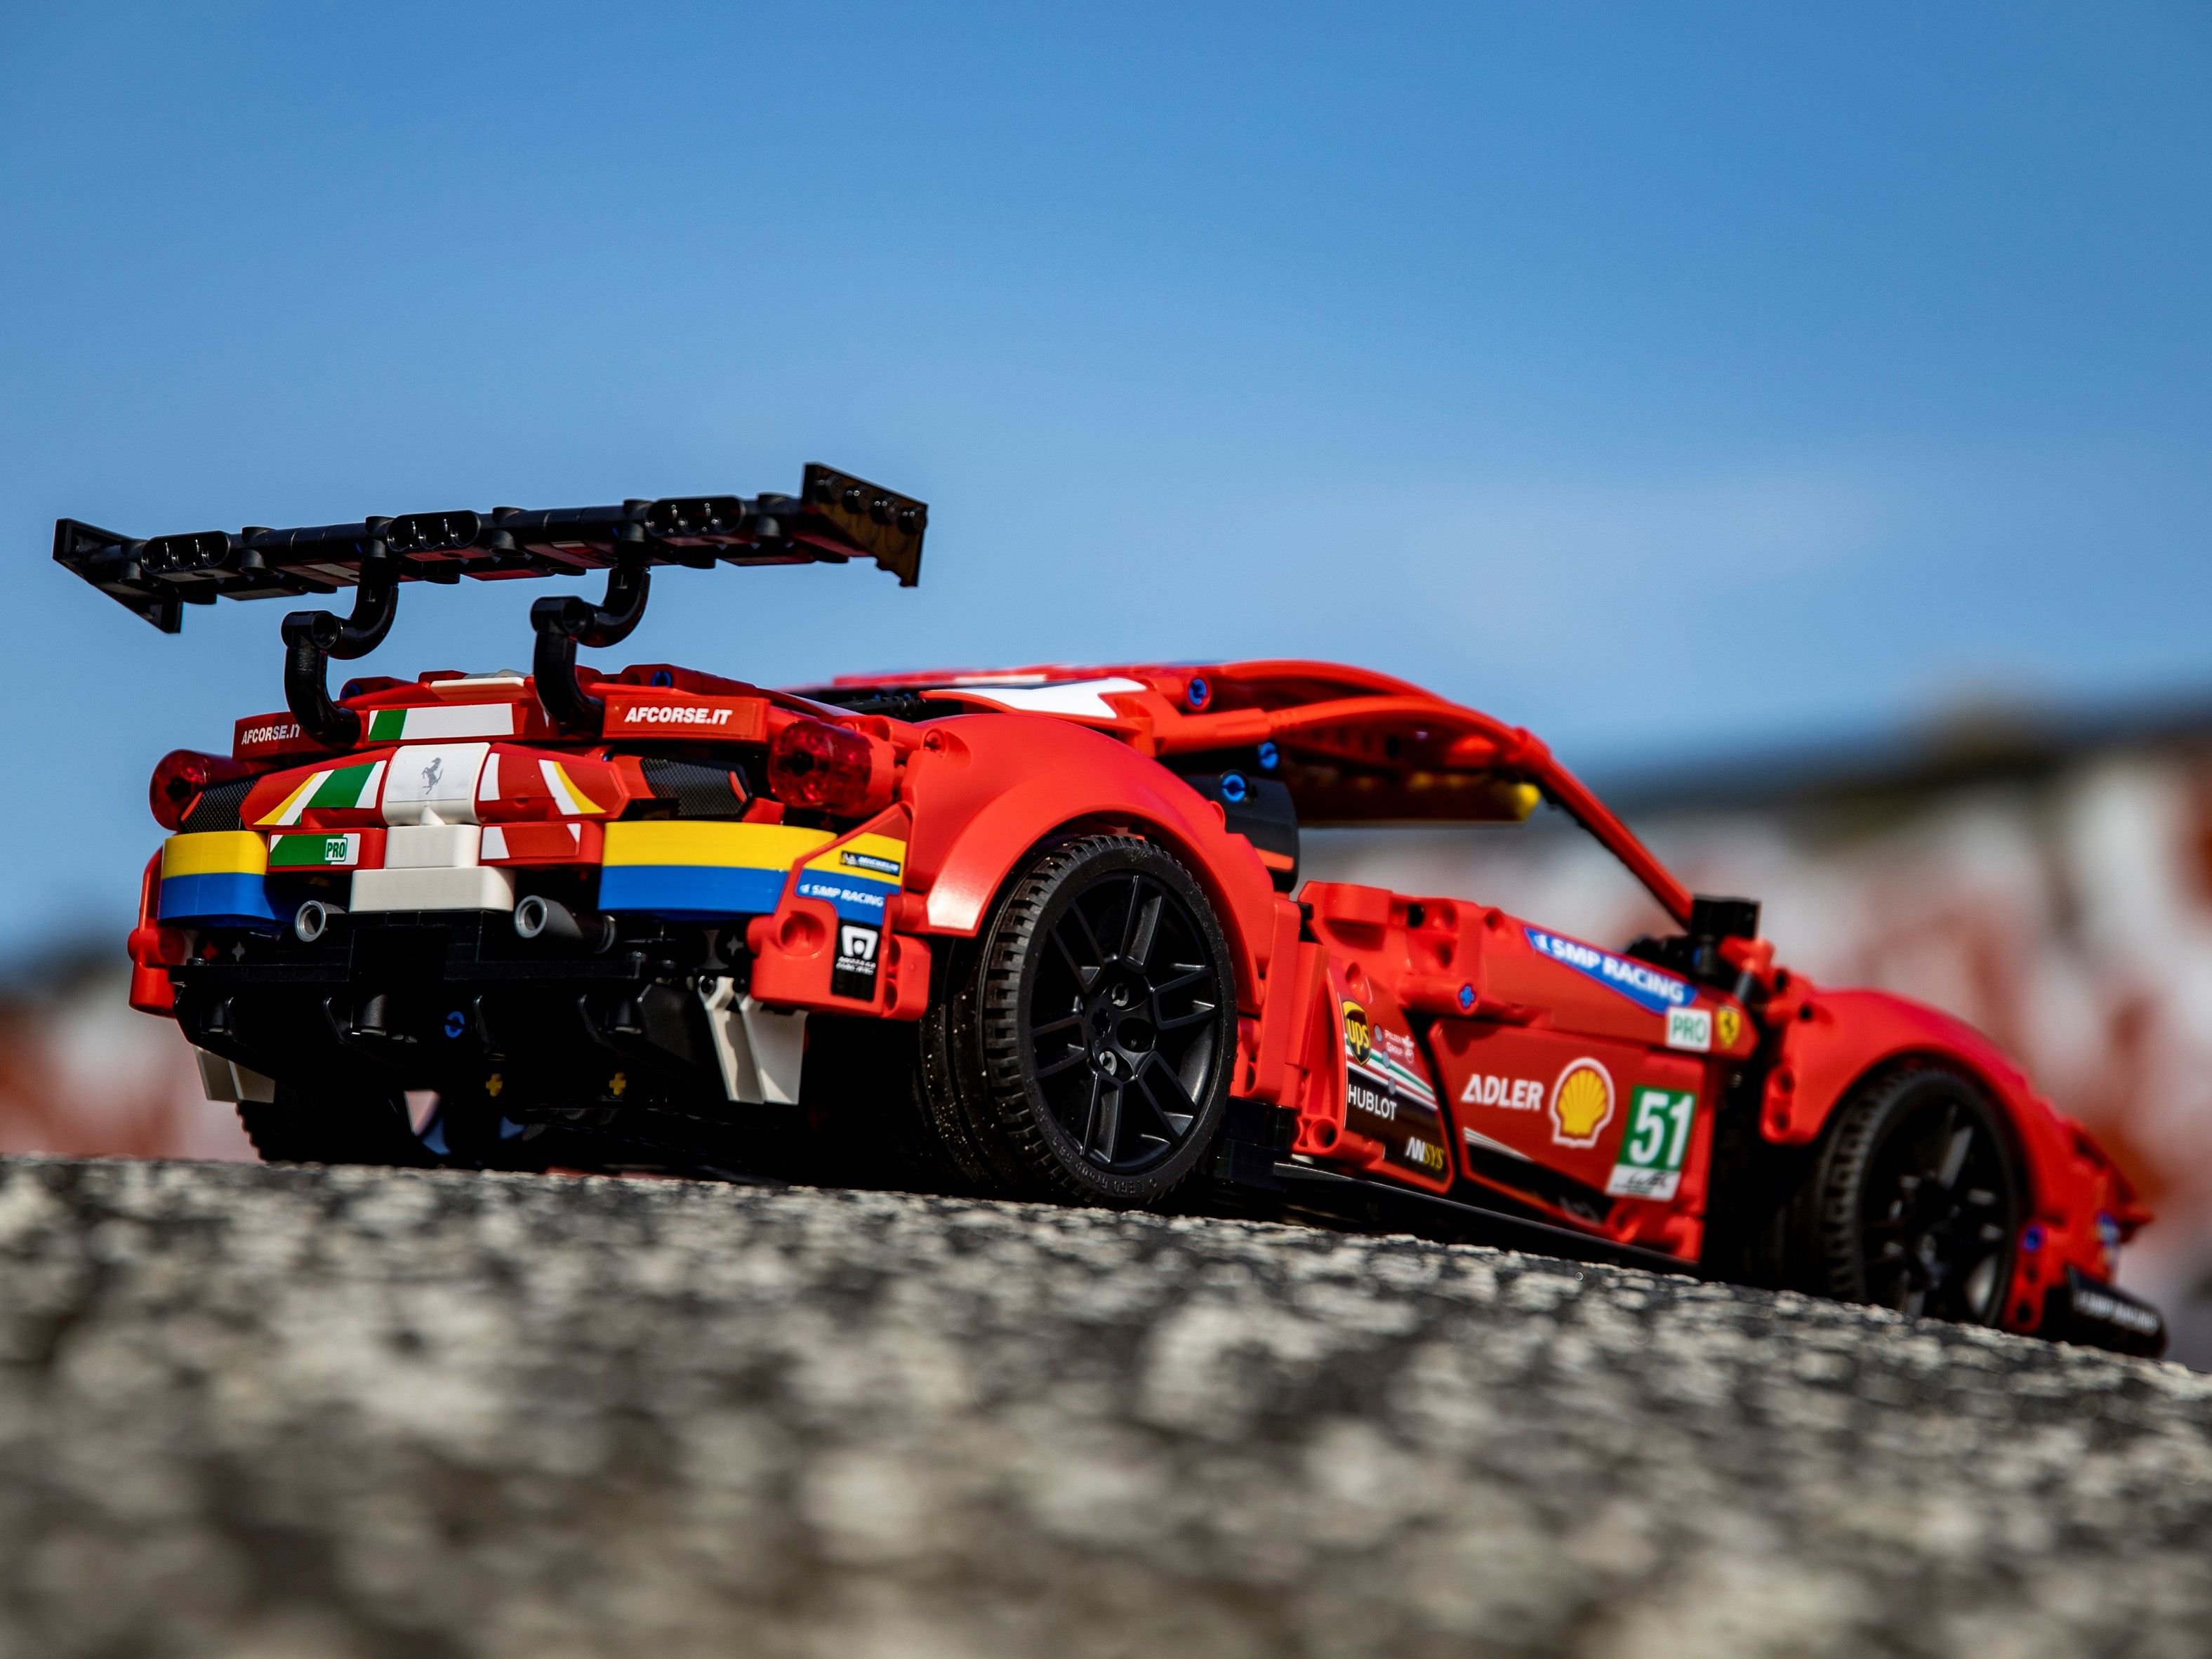 LEGO Technic 42125 Ferrari 488 GTE “AF Corse #51” LEGO_42125_alt11.jpg